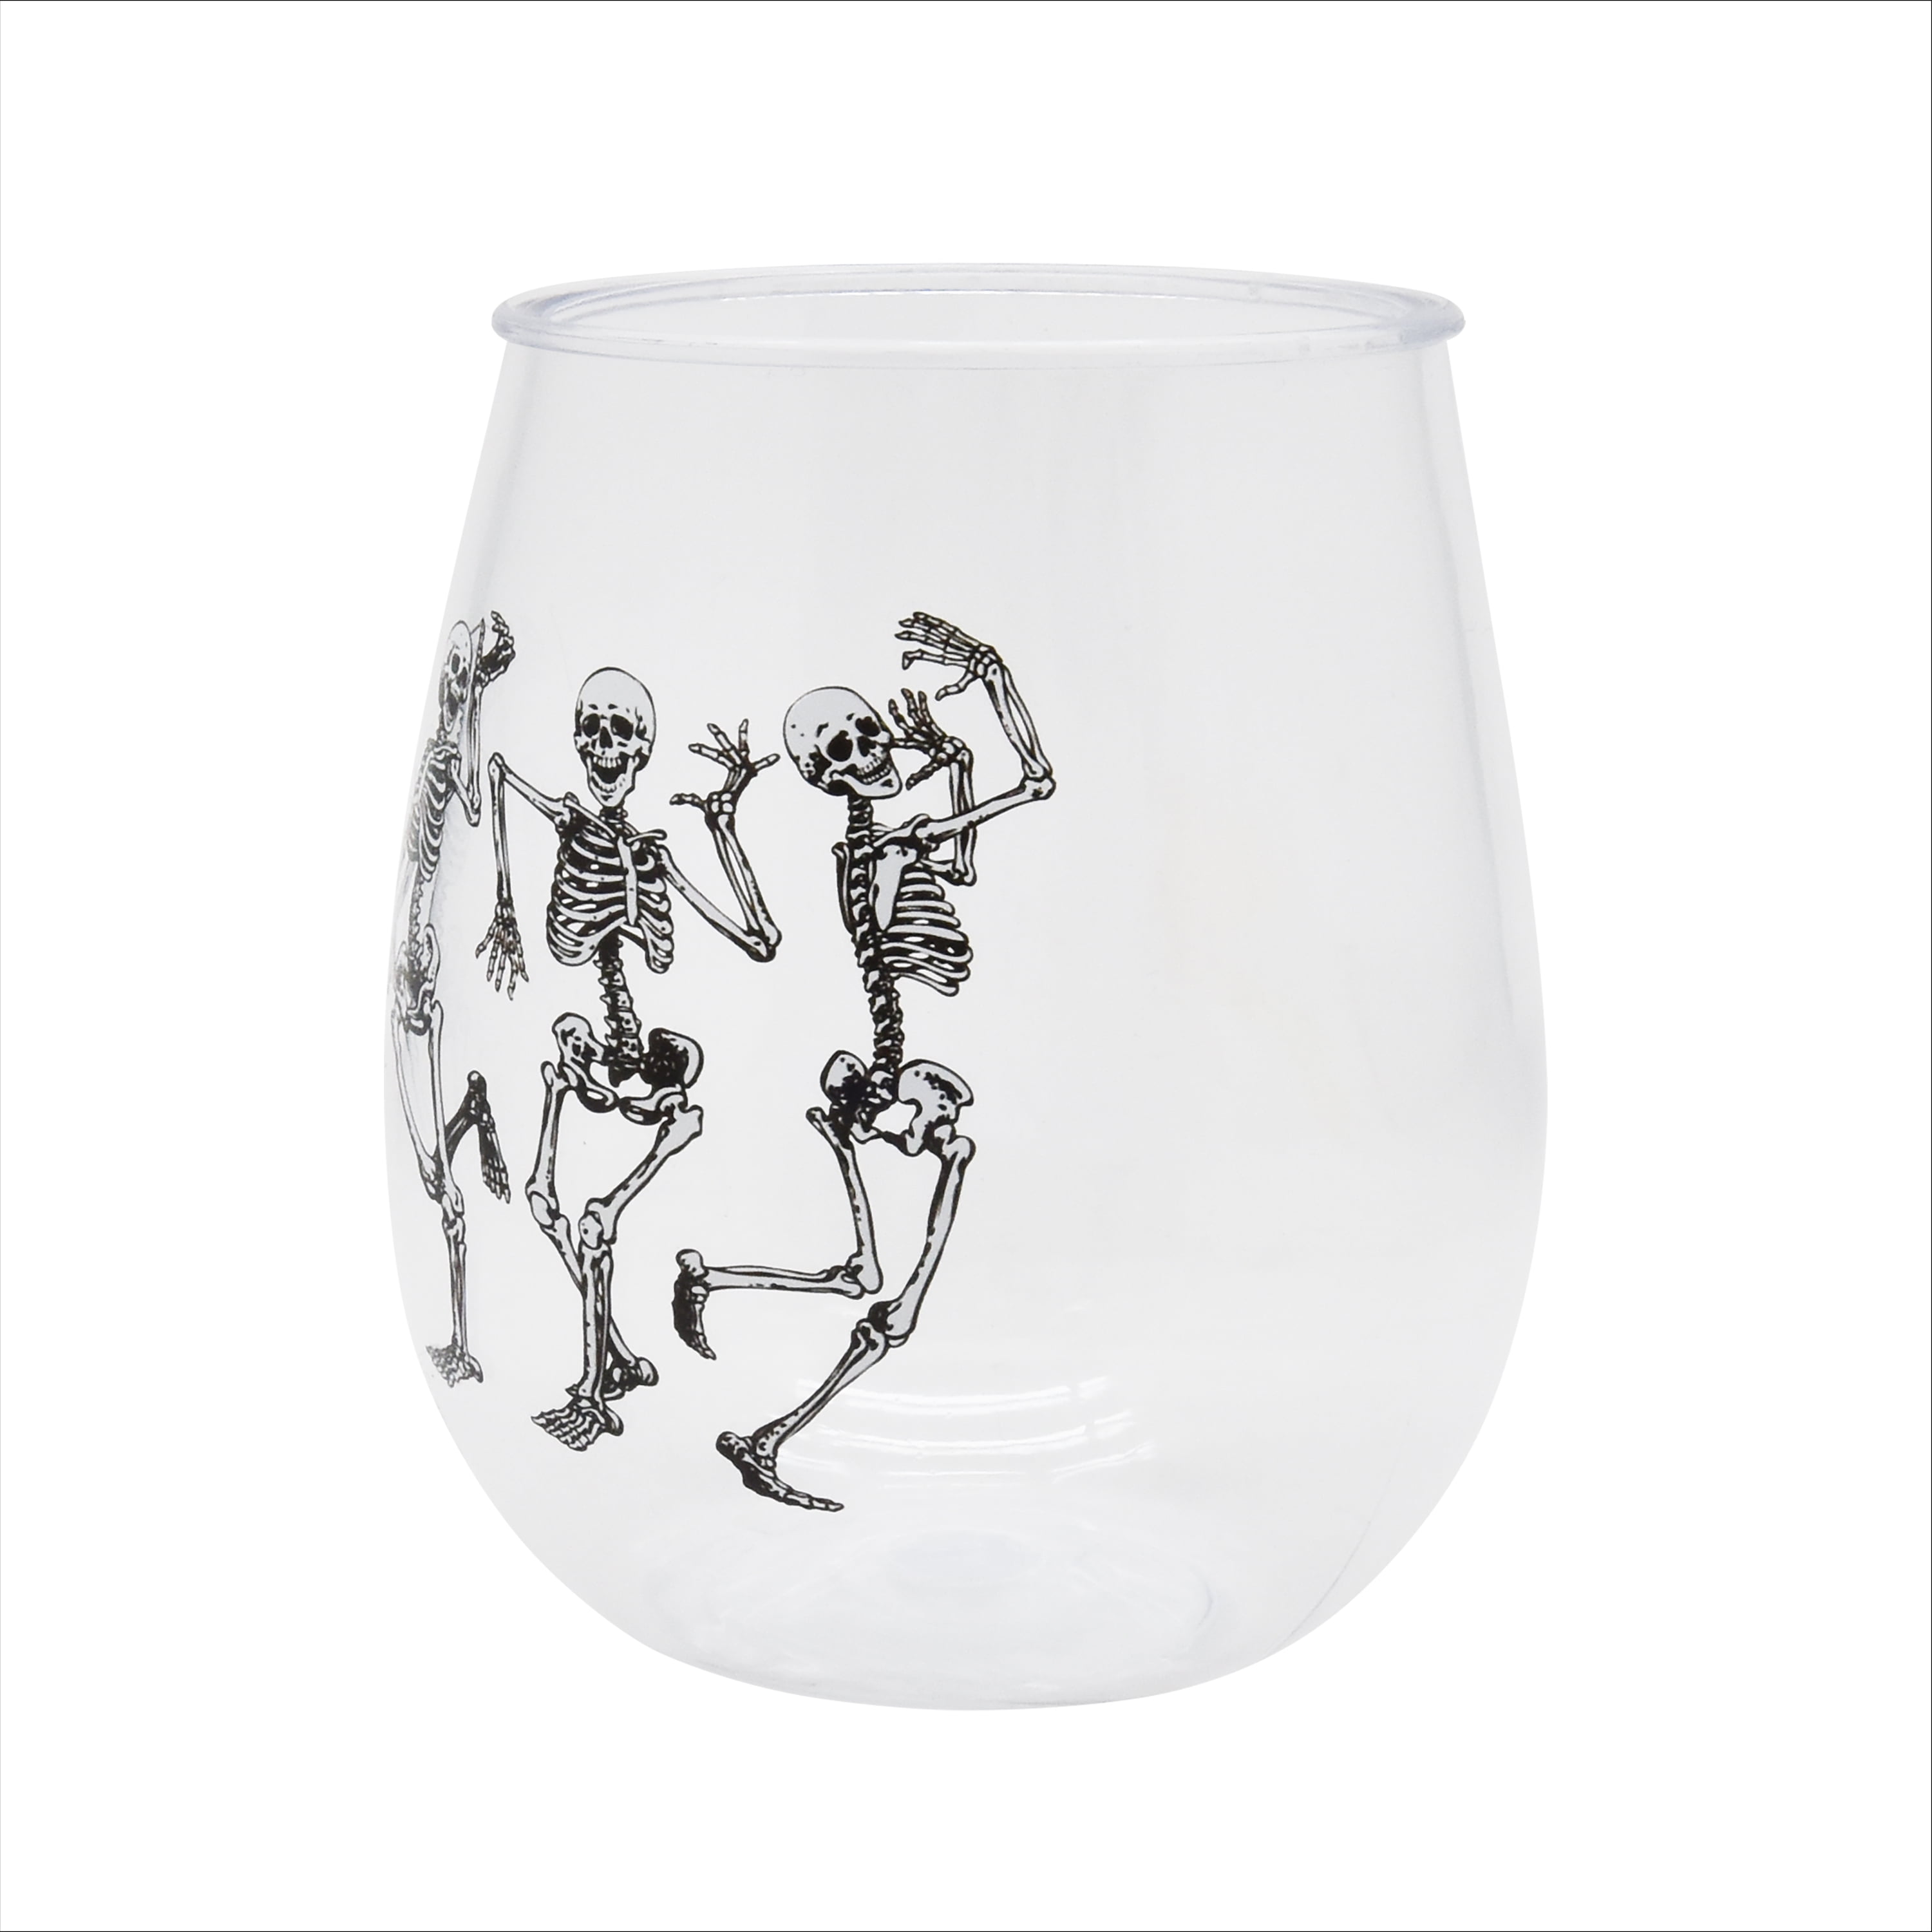 Dancing Skeletons 21 oz. Stemless Wine Glasses (Set of 4